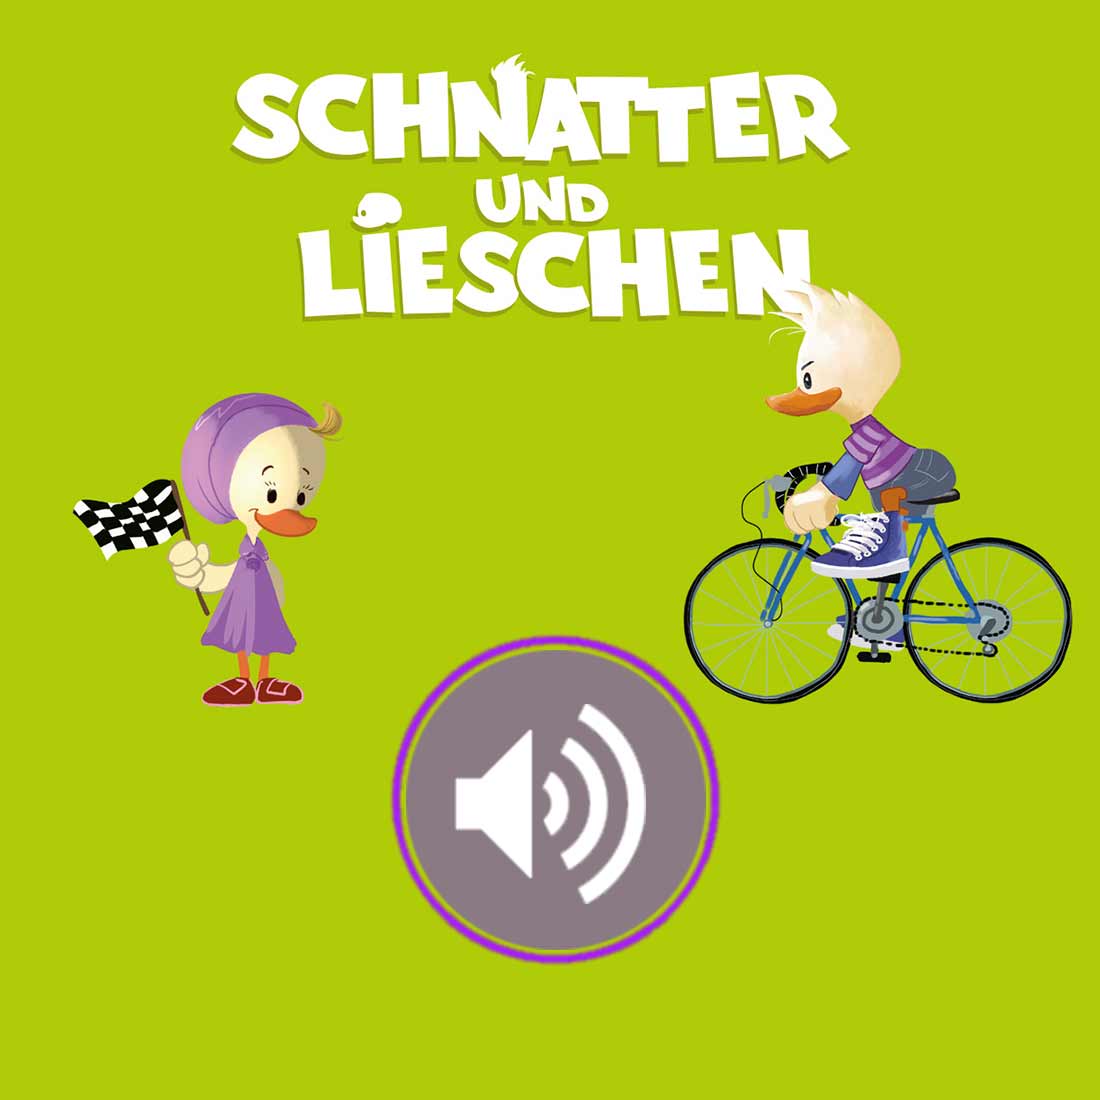 Schnatter und Lieschen FahrradLied (Download